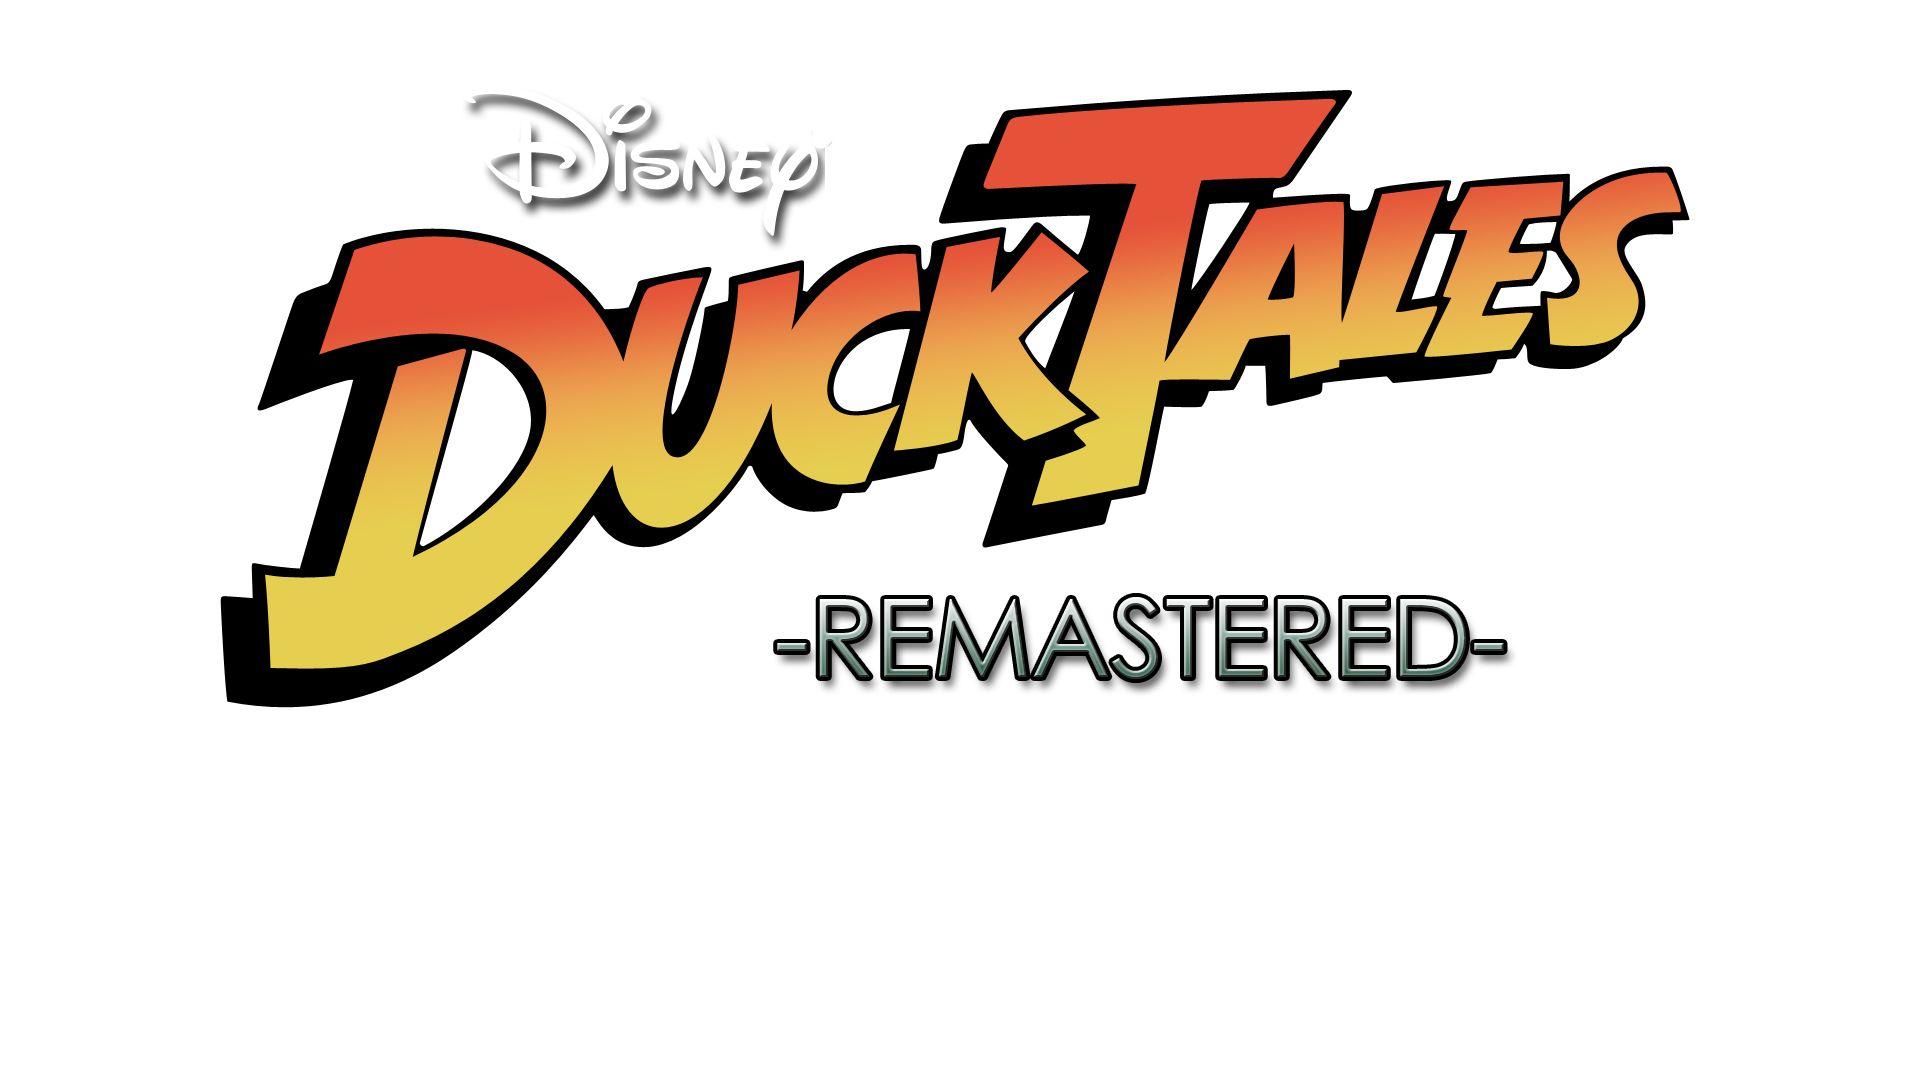 Remastered Logo - Image - 1368027977 ducktales remastered logo final-copy.jpg ...